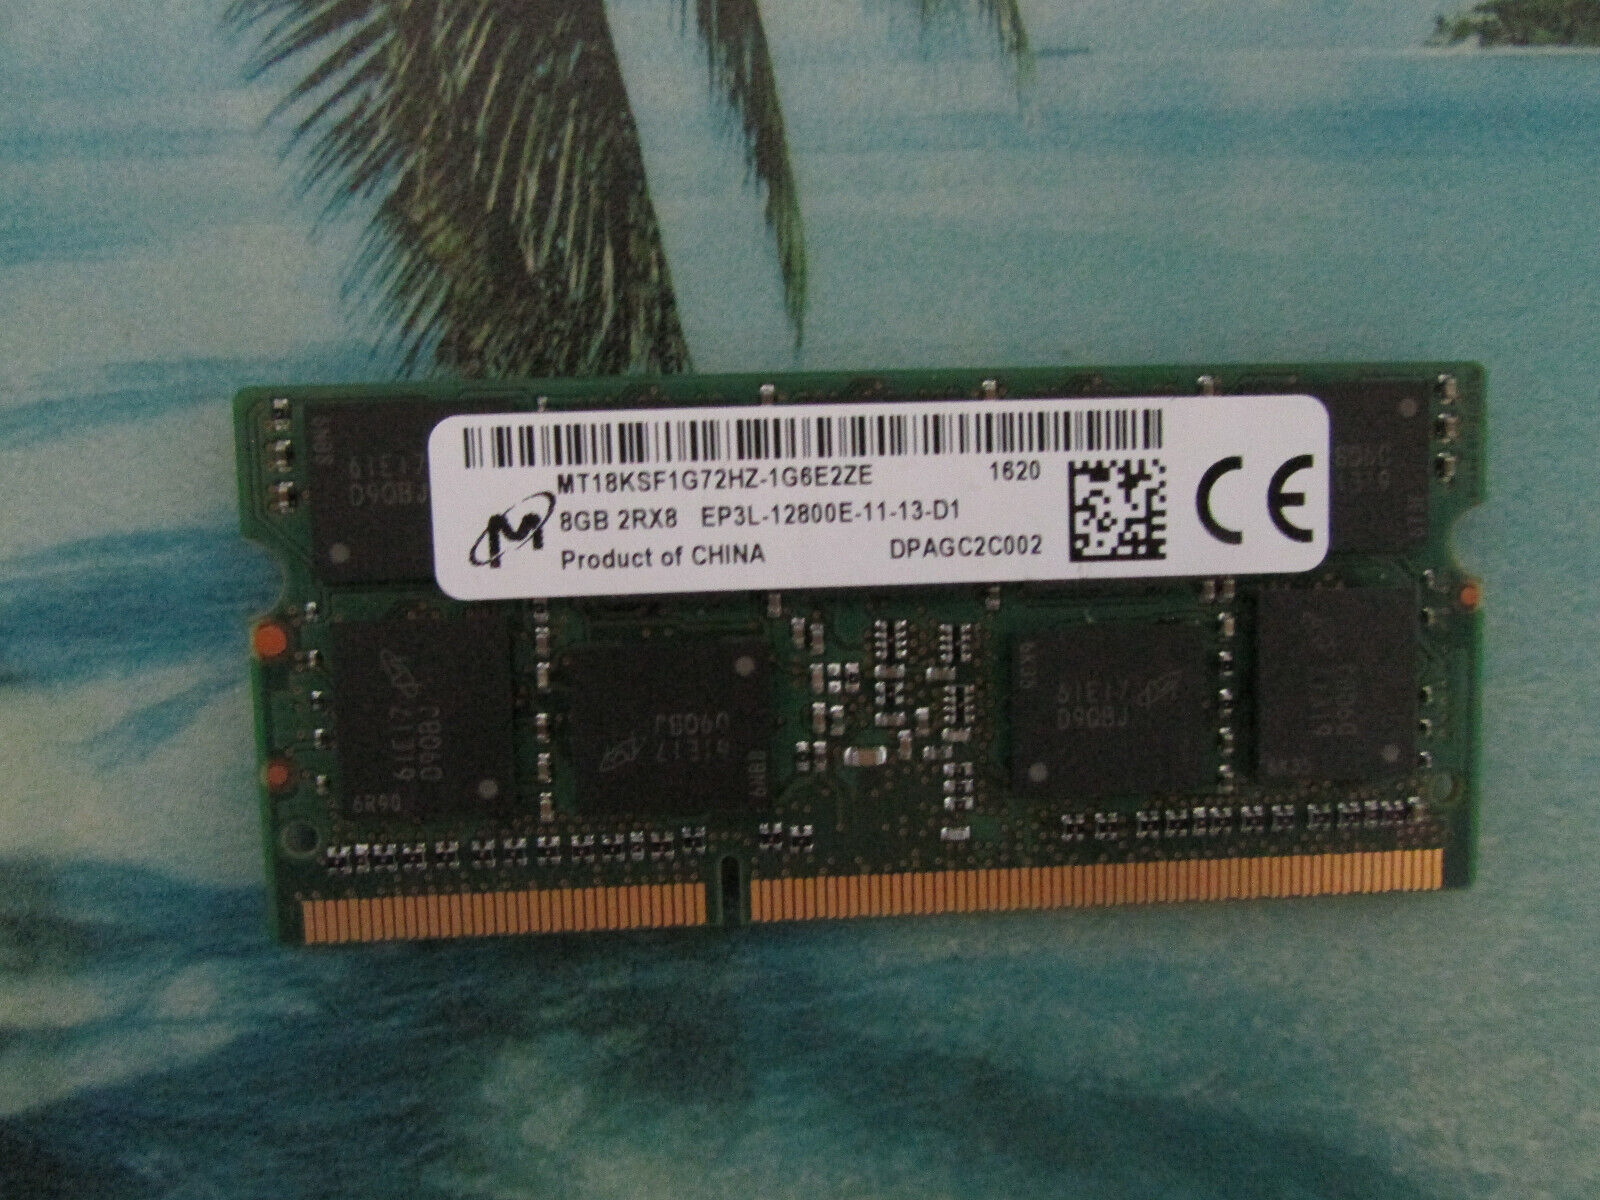 Micron 8GB 2Rx8 EP3L-12800E DDR3 SODIMM  Memory MT18KSF1G72HZ-1G6E2ZF ECC RAM